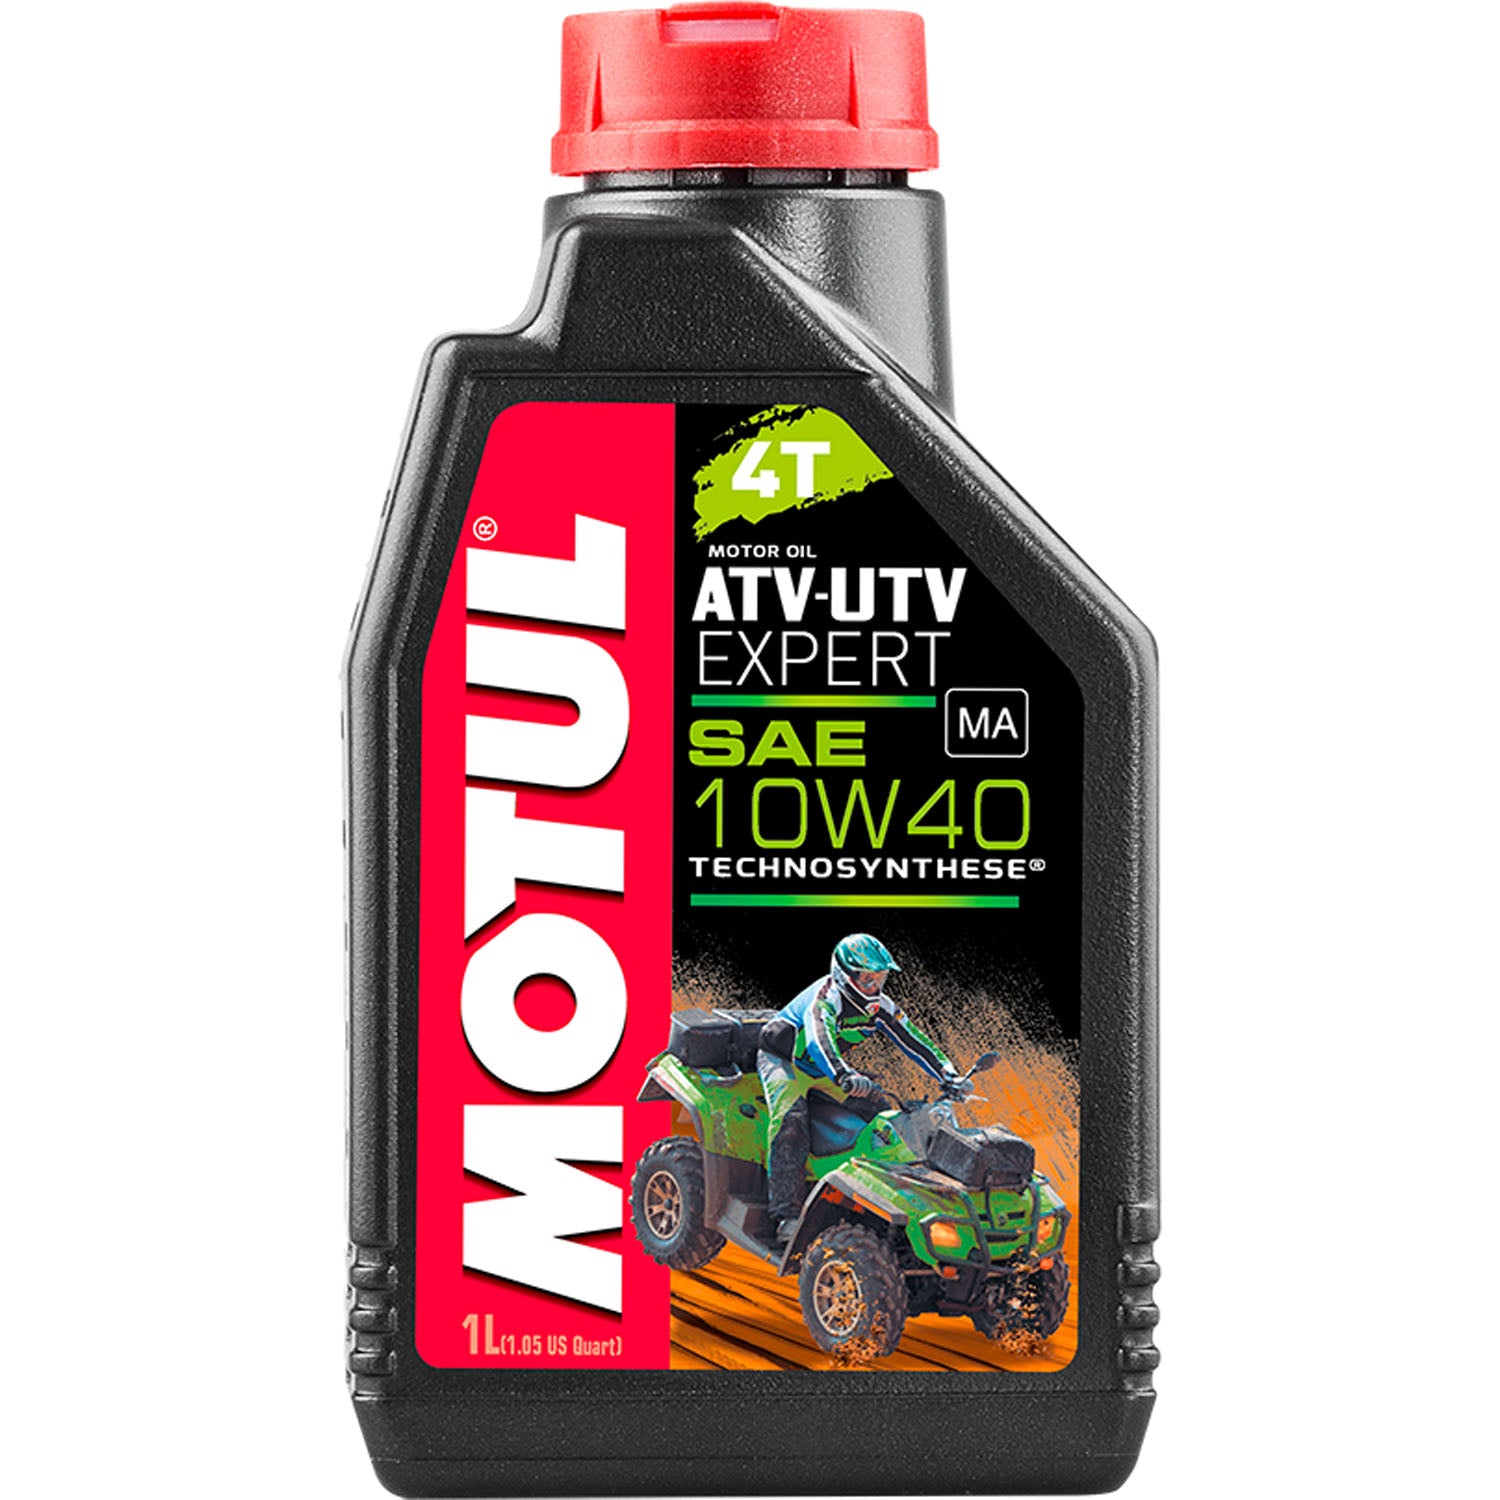 Motul ATV-UTV Expert 4T Motor Oil 10W40 - 1 Liter